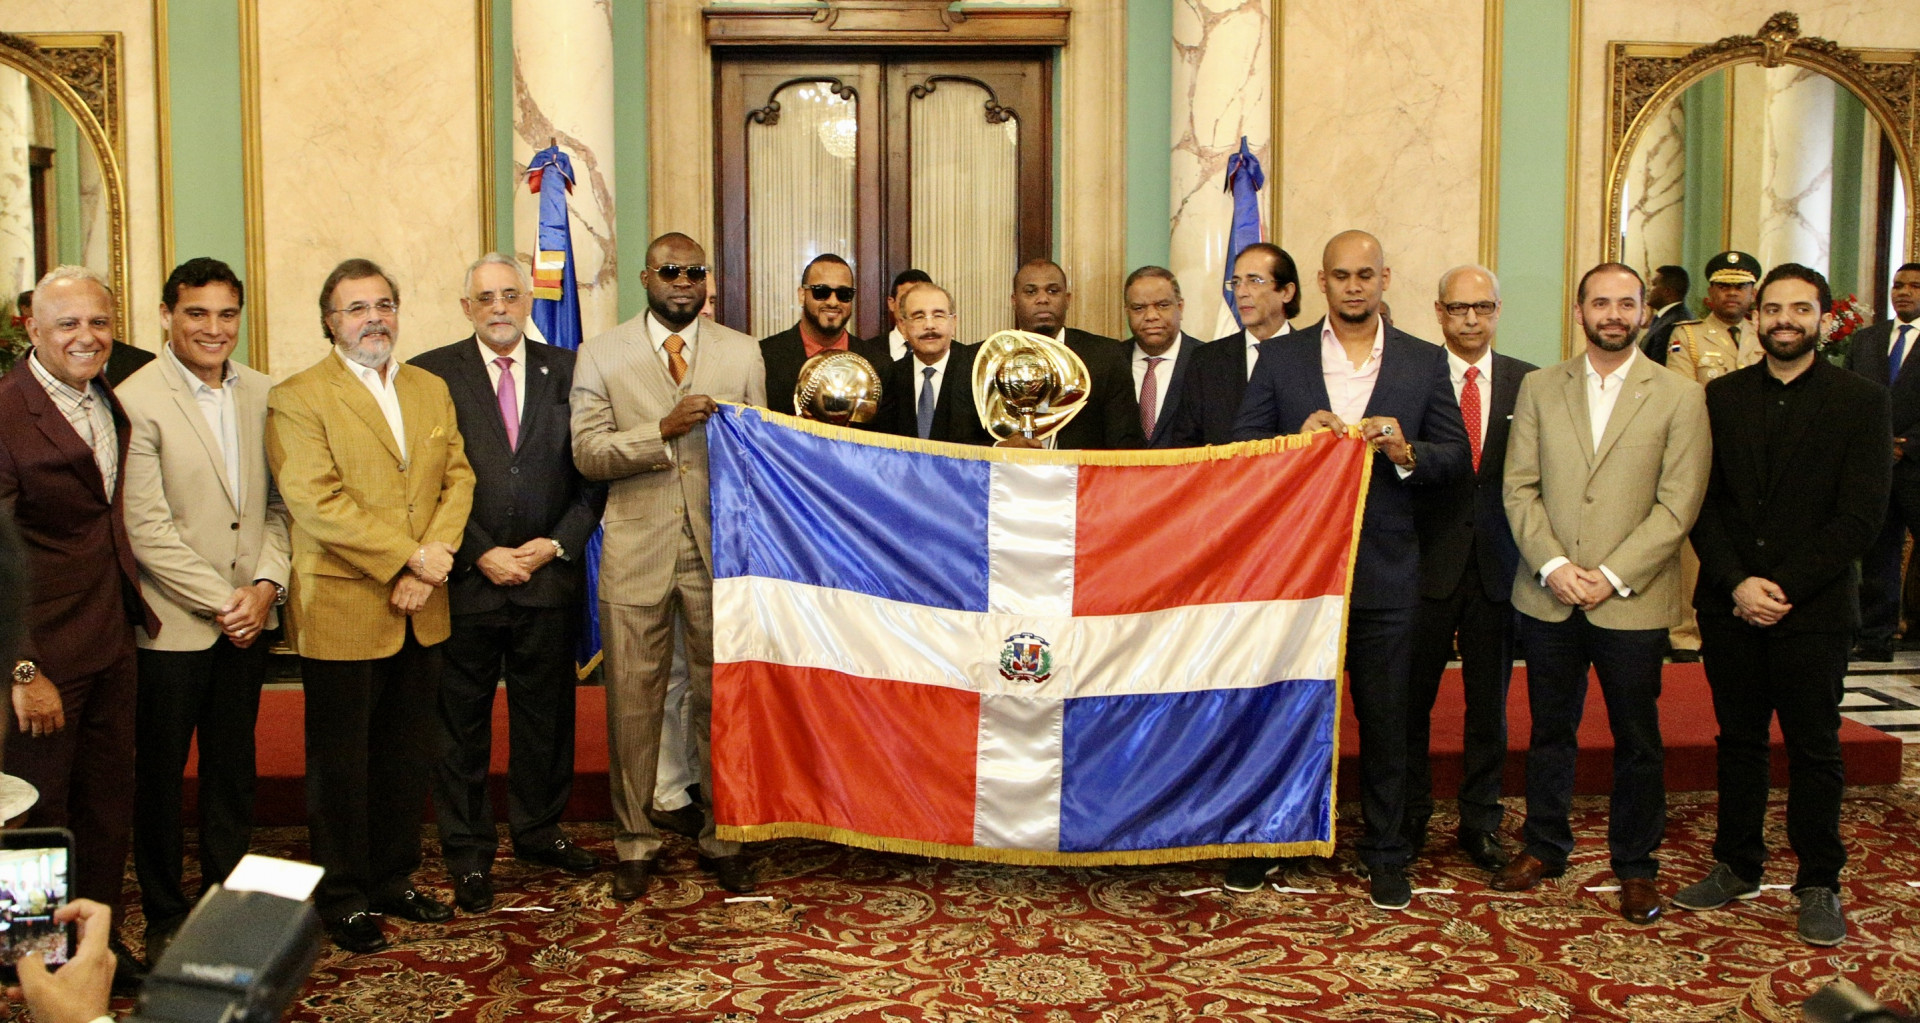 REPÚBLICA DOMINICANA: Toros del Este cumplen misión: traer corona 20 de República Dominicana. Danilo Medina recibe con alegría a campeones Serie del Caribe 2020